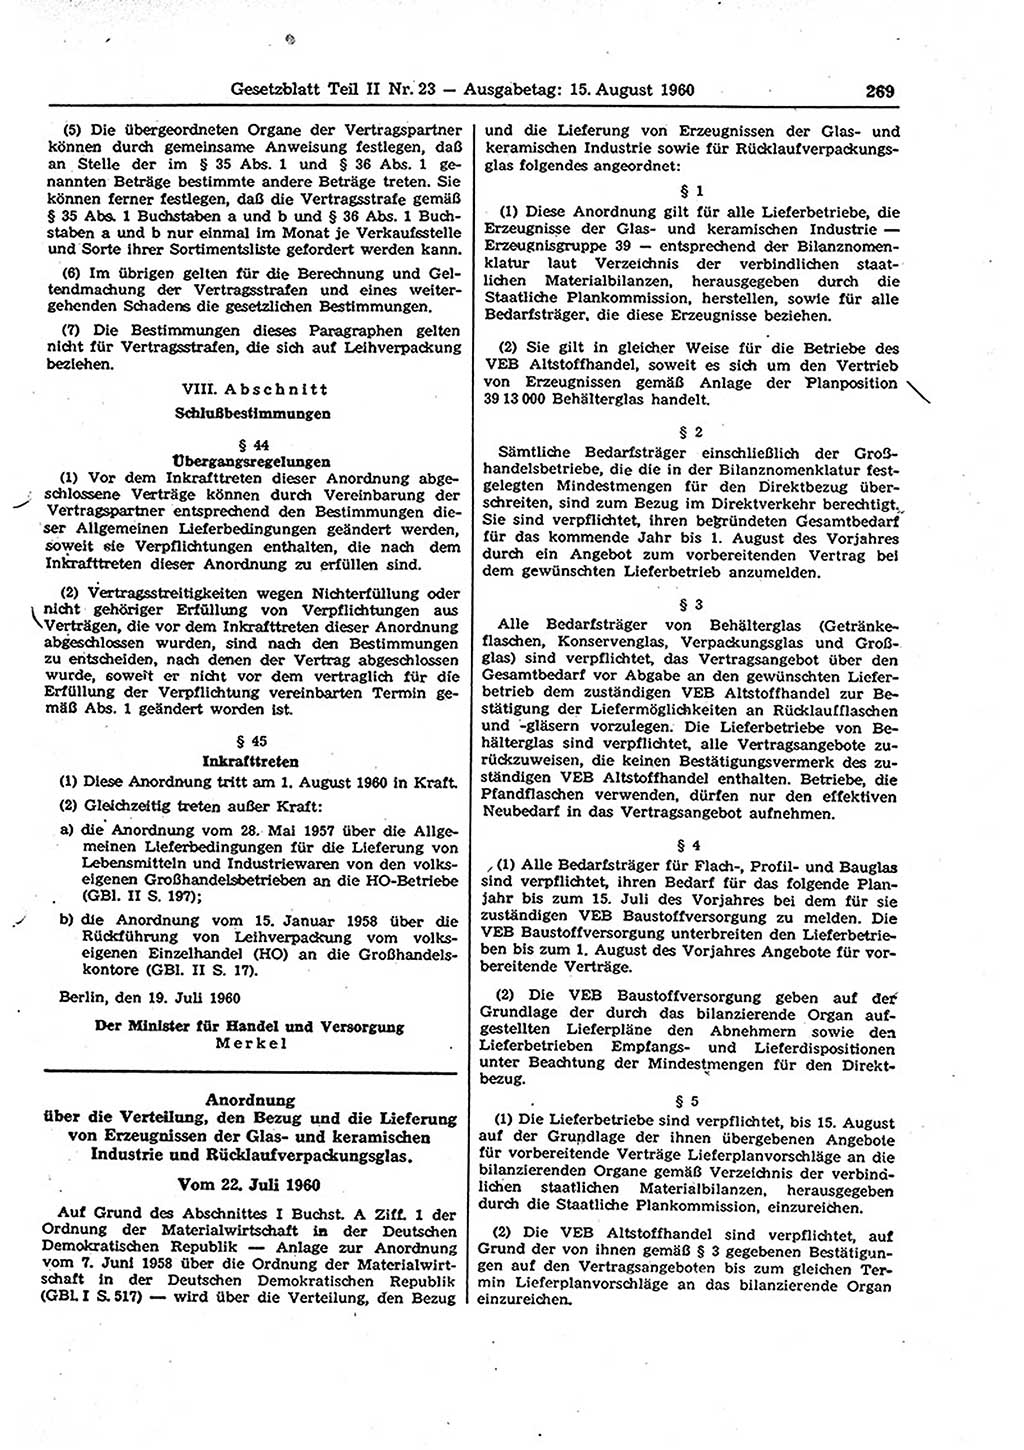 Gesetzblatt (GBl.) der Deutschen Demokratischen Republik (DDR) Teil ⅠⅠ 1960, Seite 269 (GBl. DDR ⅠⅠ 1960, S. 269)